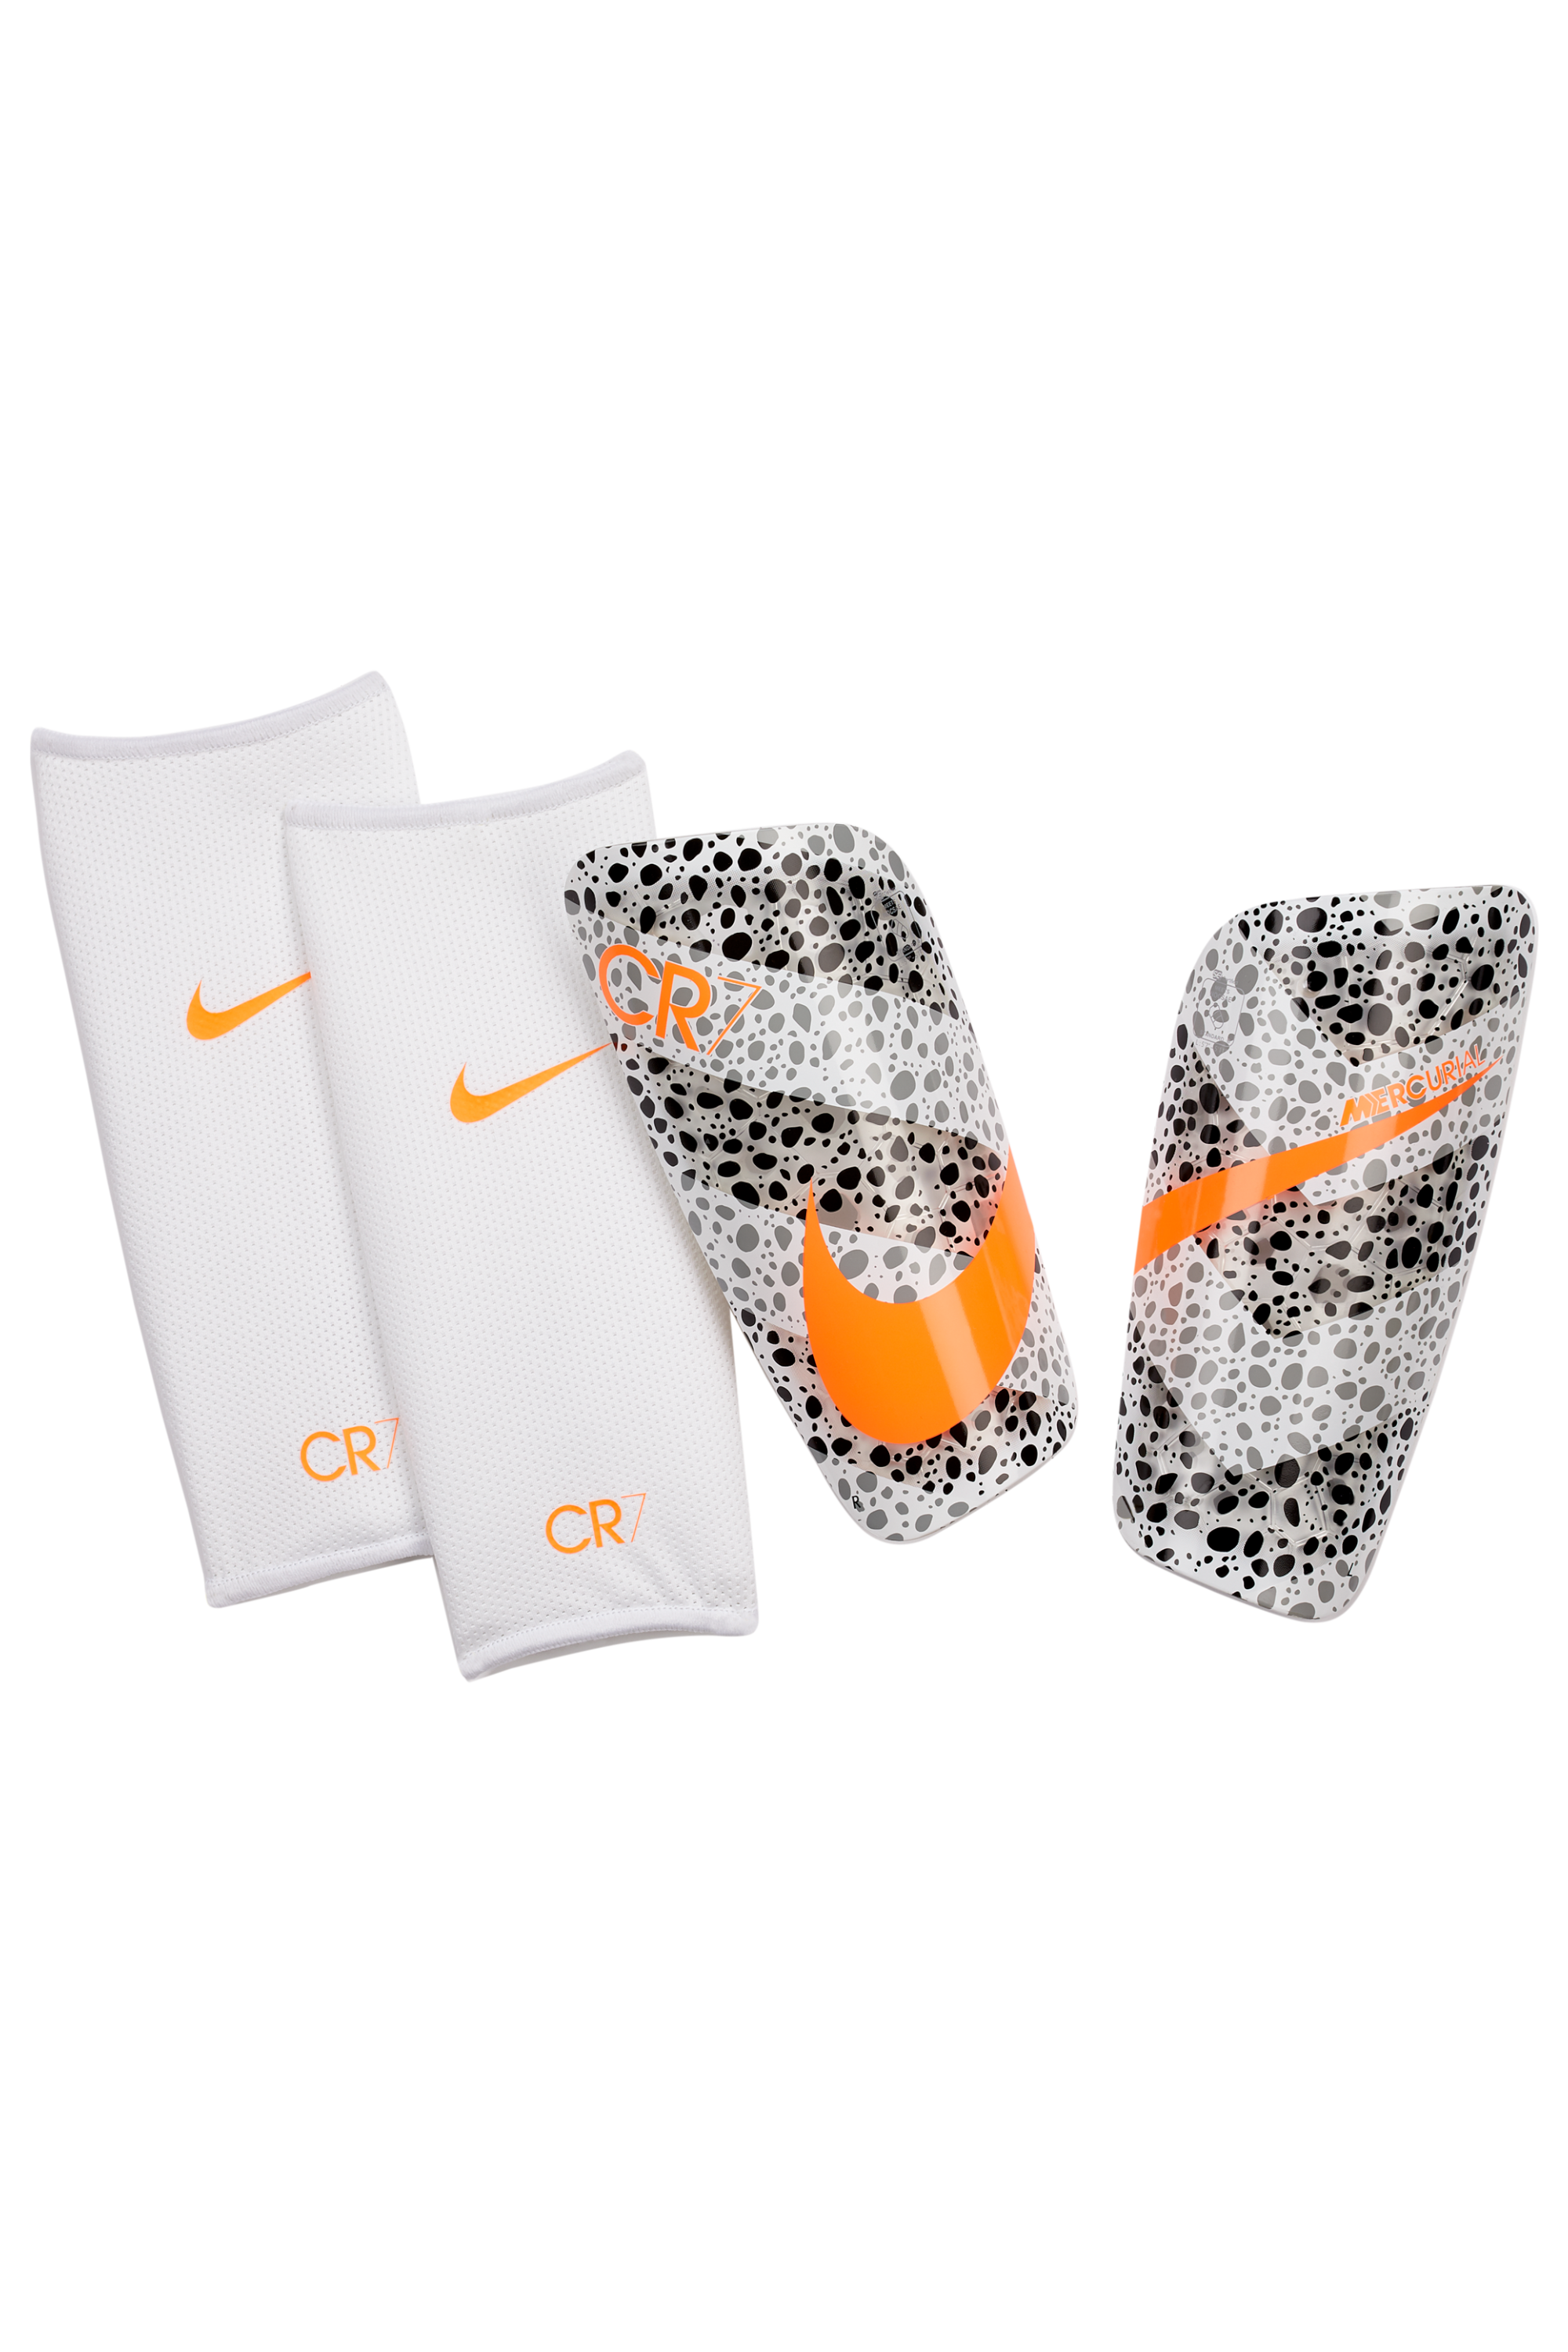 Adaptado Contento Propuesta alternativa Shin Pads Nike CR7 Mercurial Lite | R-GOL.com - Football boots & equipment